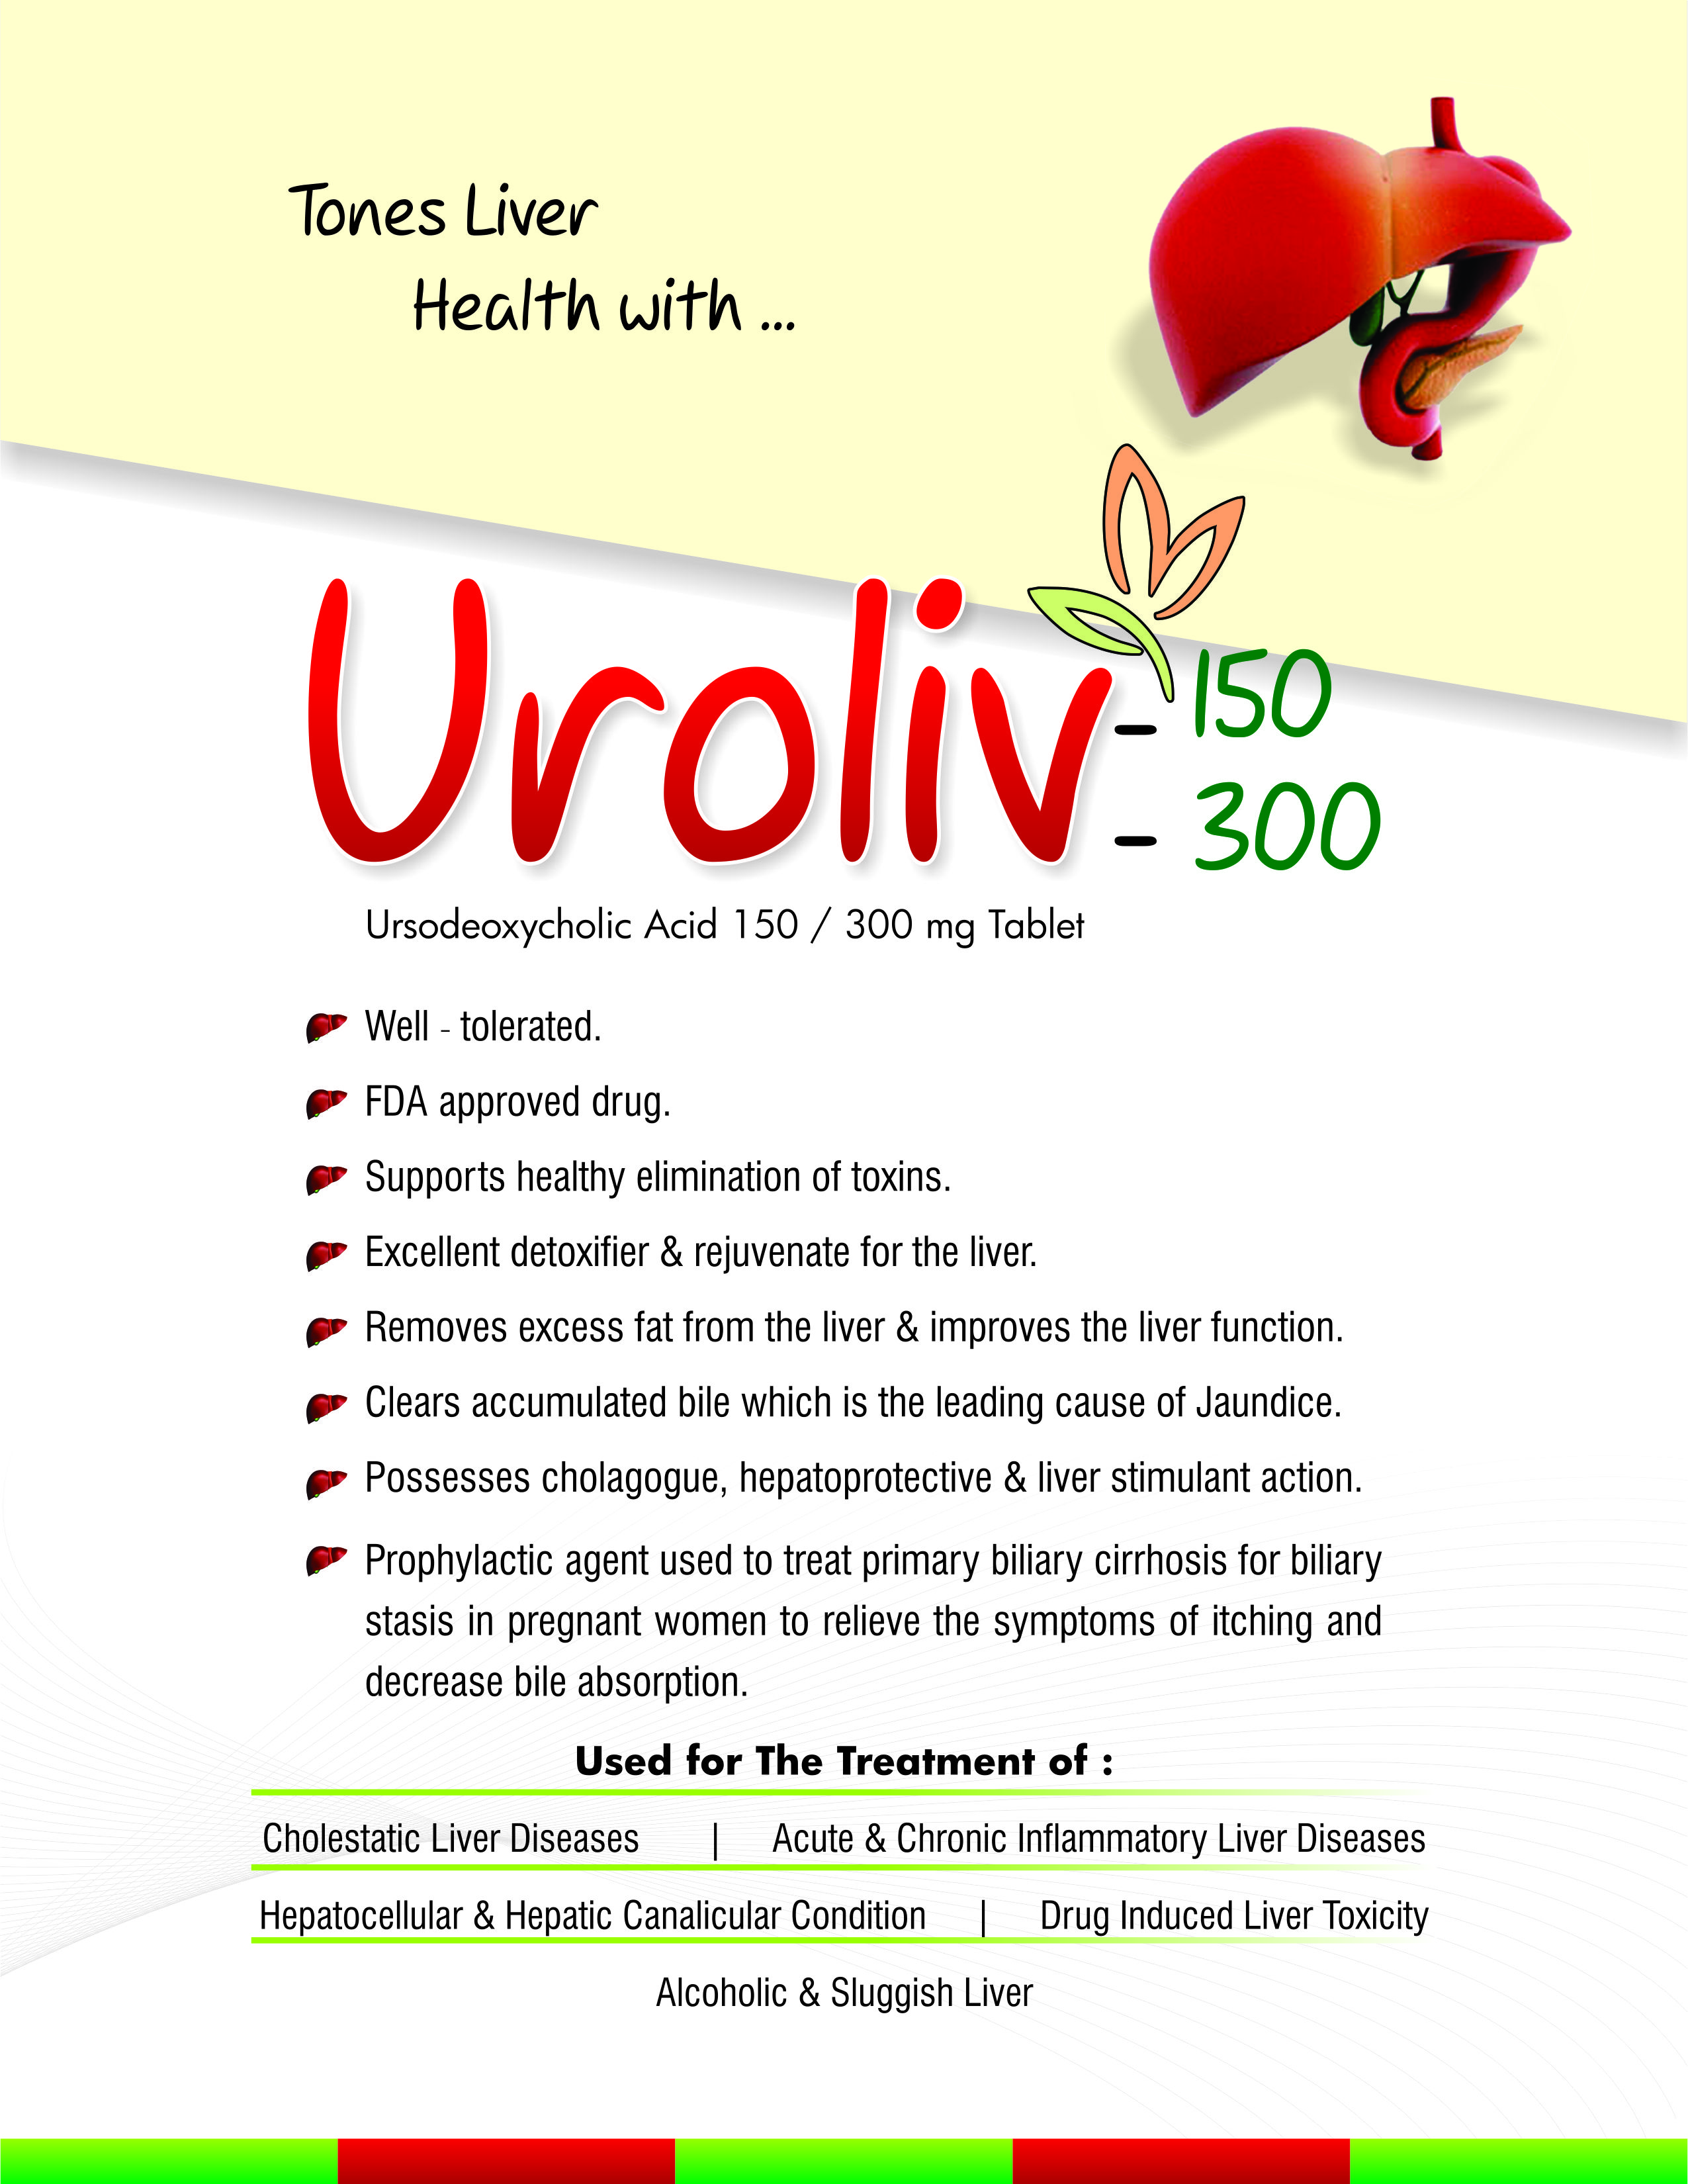 Uroliv,urinary infection